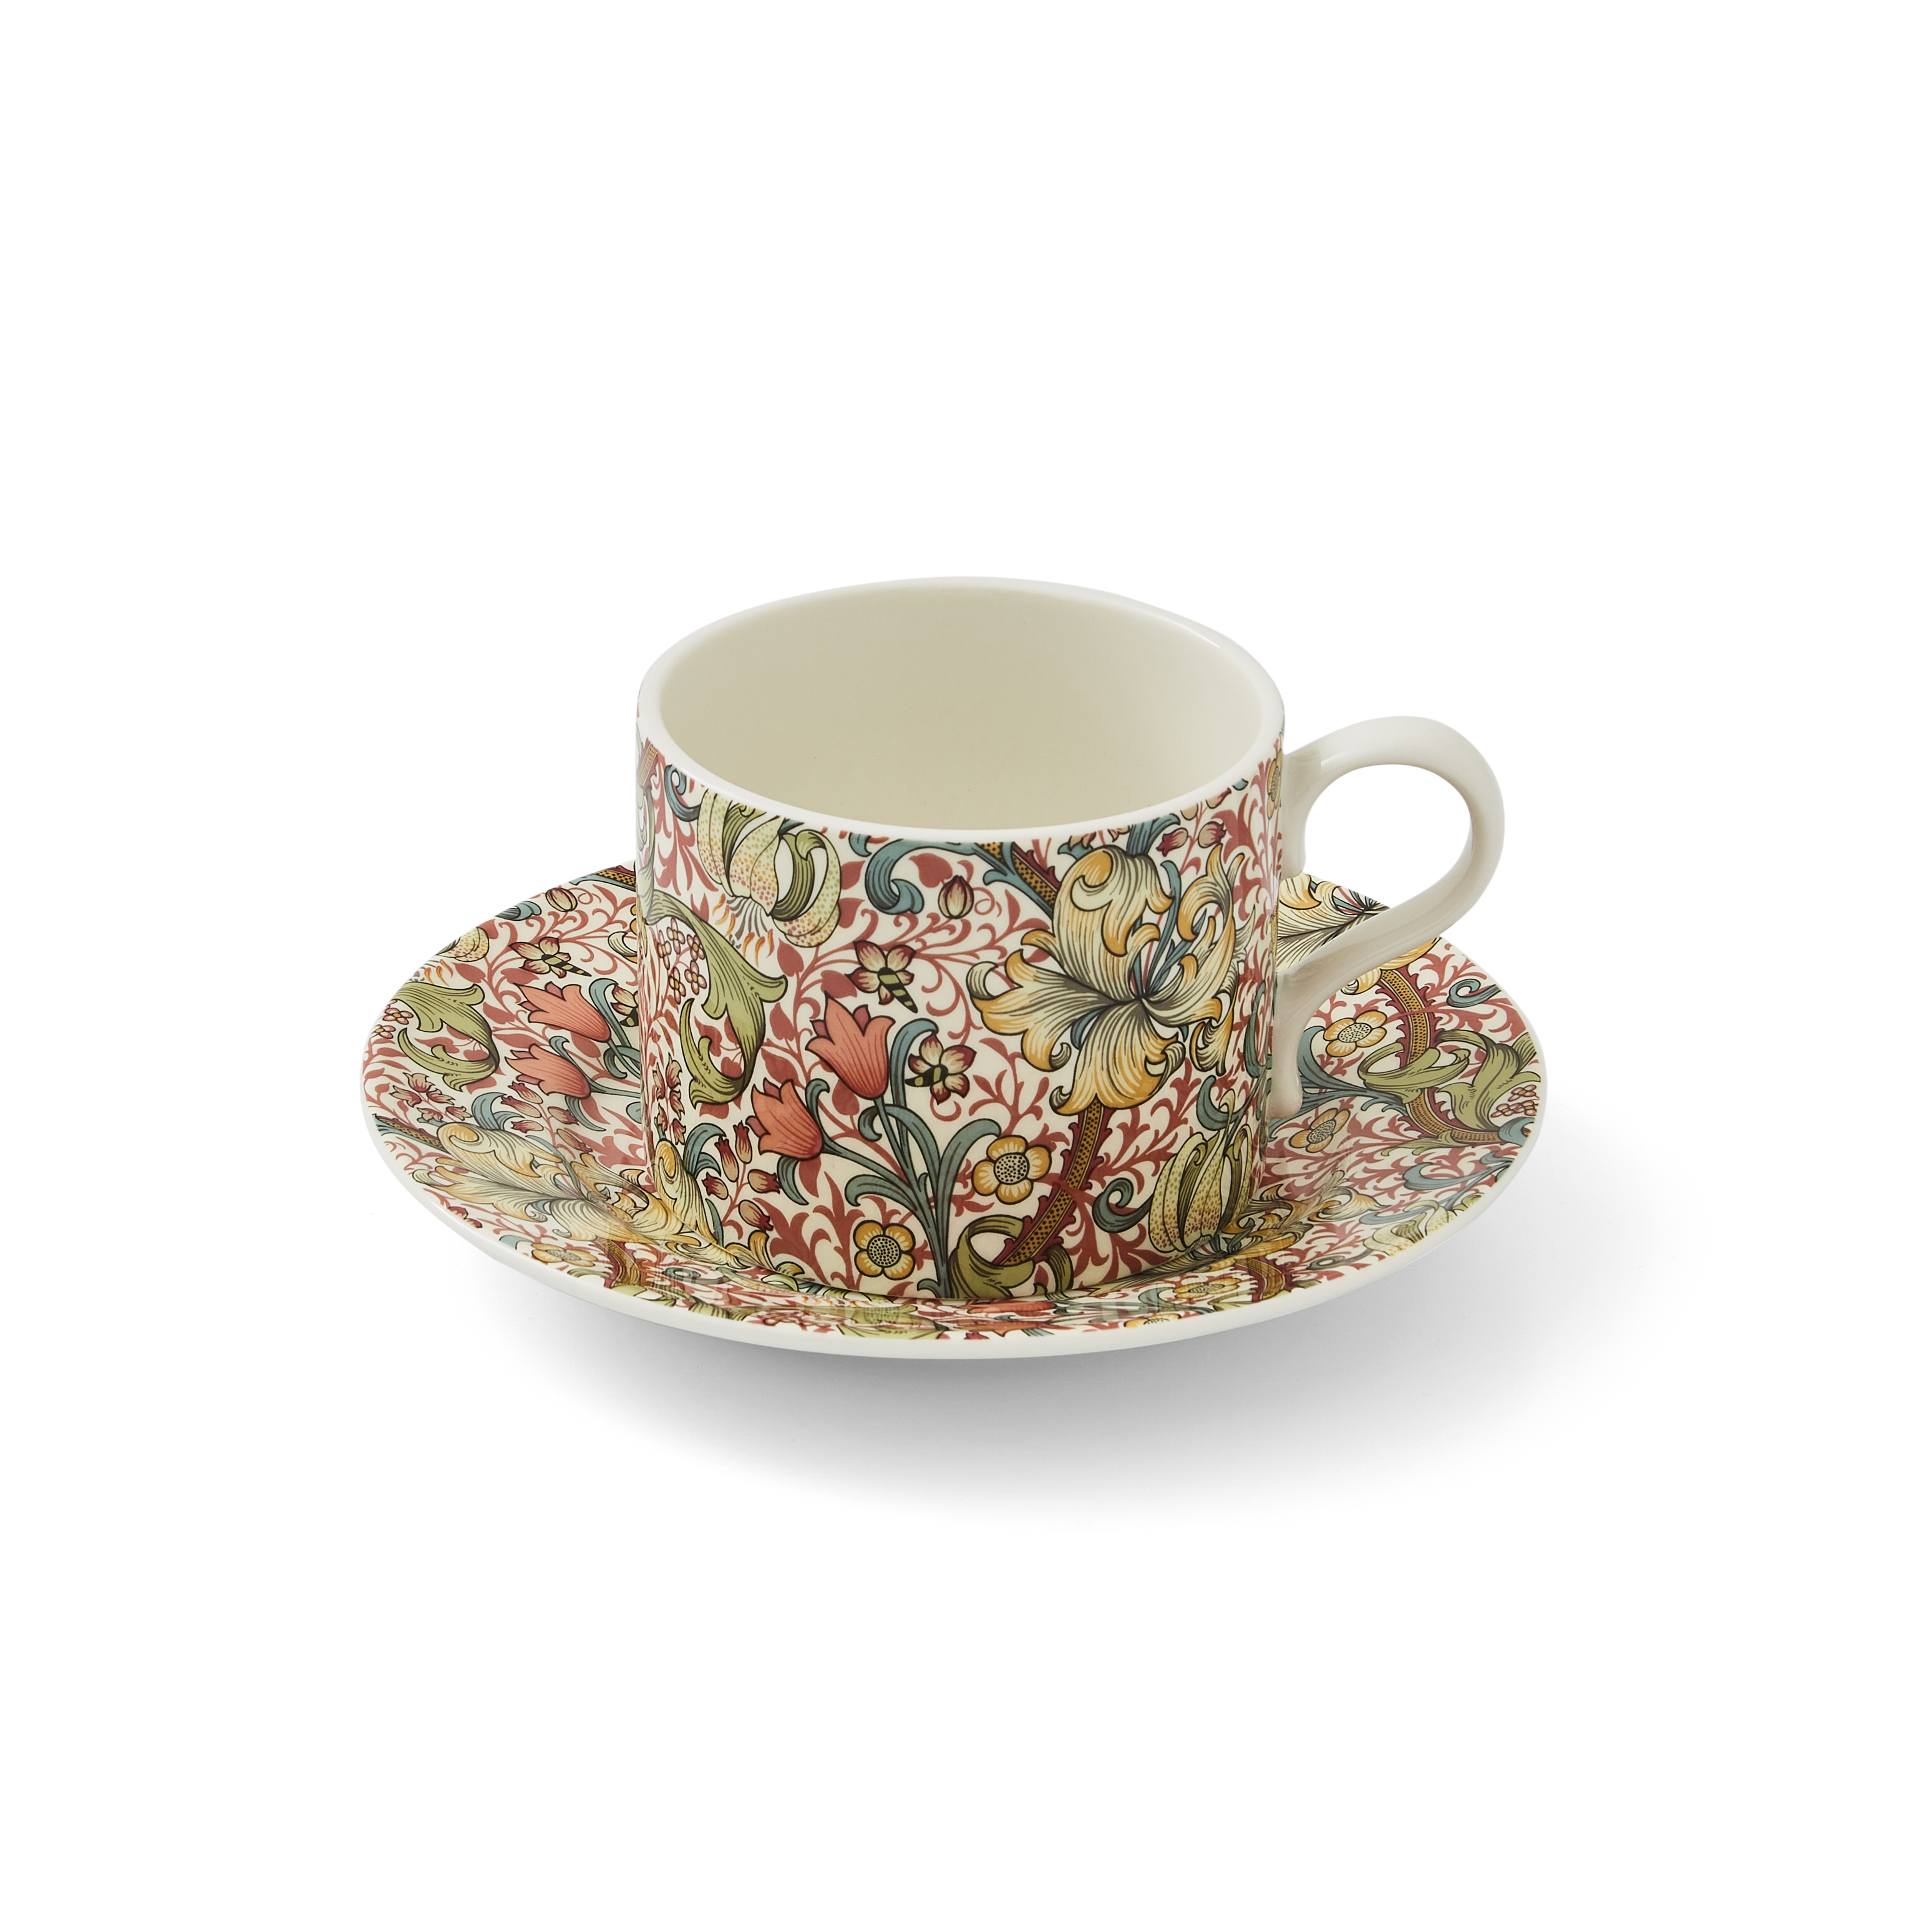 Morris & Co Teacup & Saucer Set (Golden Lily) image number null